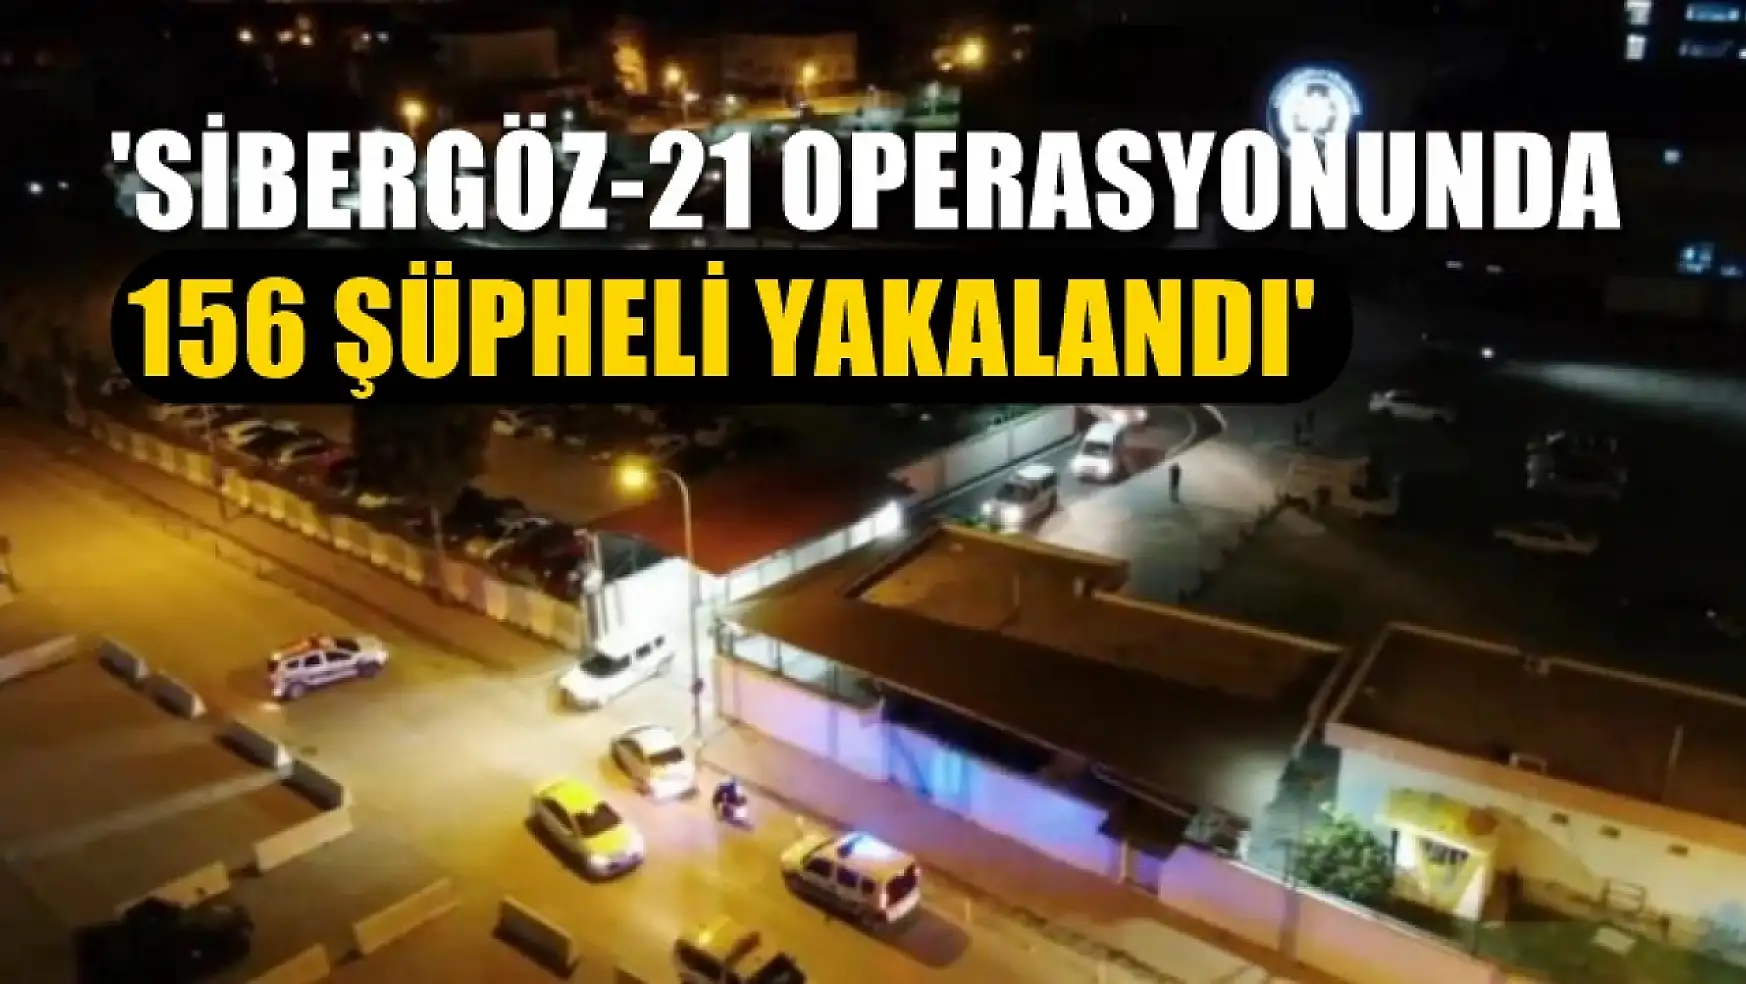 Bakan Yerlikaya,' Sibergöz-21 operasyonunda 156 şüpheli yakalandı'